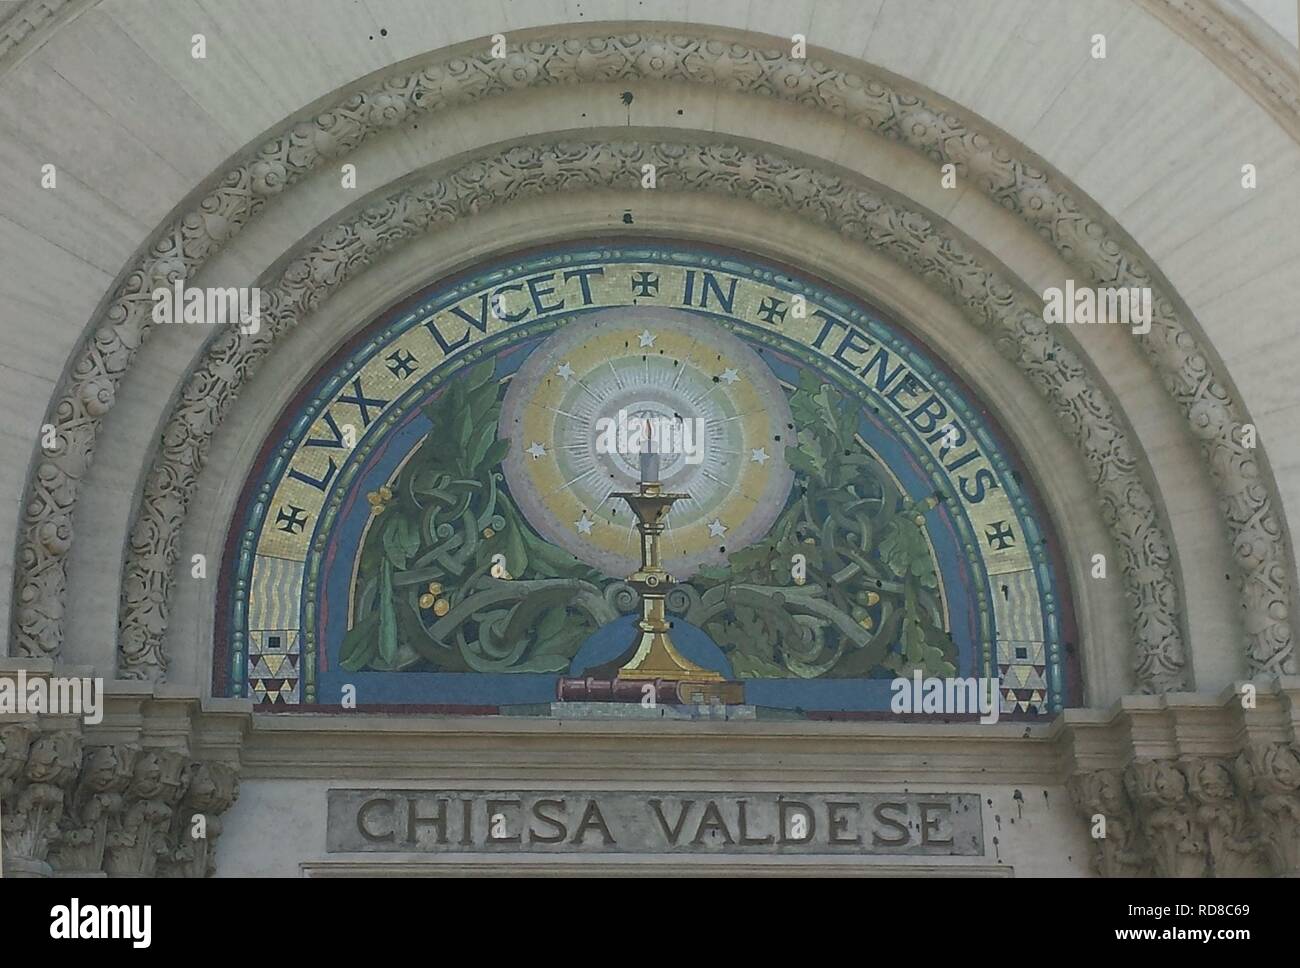 Valdesi simbolo " Lux lucet in tenebris' su il Tempio Valdese di Piazza Cavour a Roma. Museo: Tempio Valdese di Roma. Autore: anonimo. Foto Stock